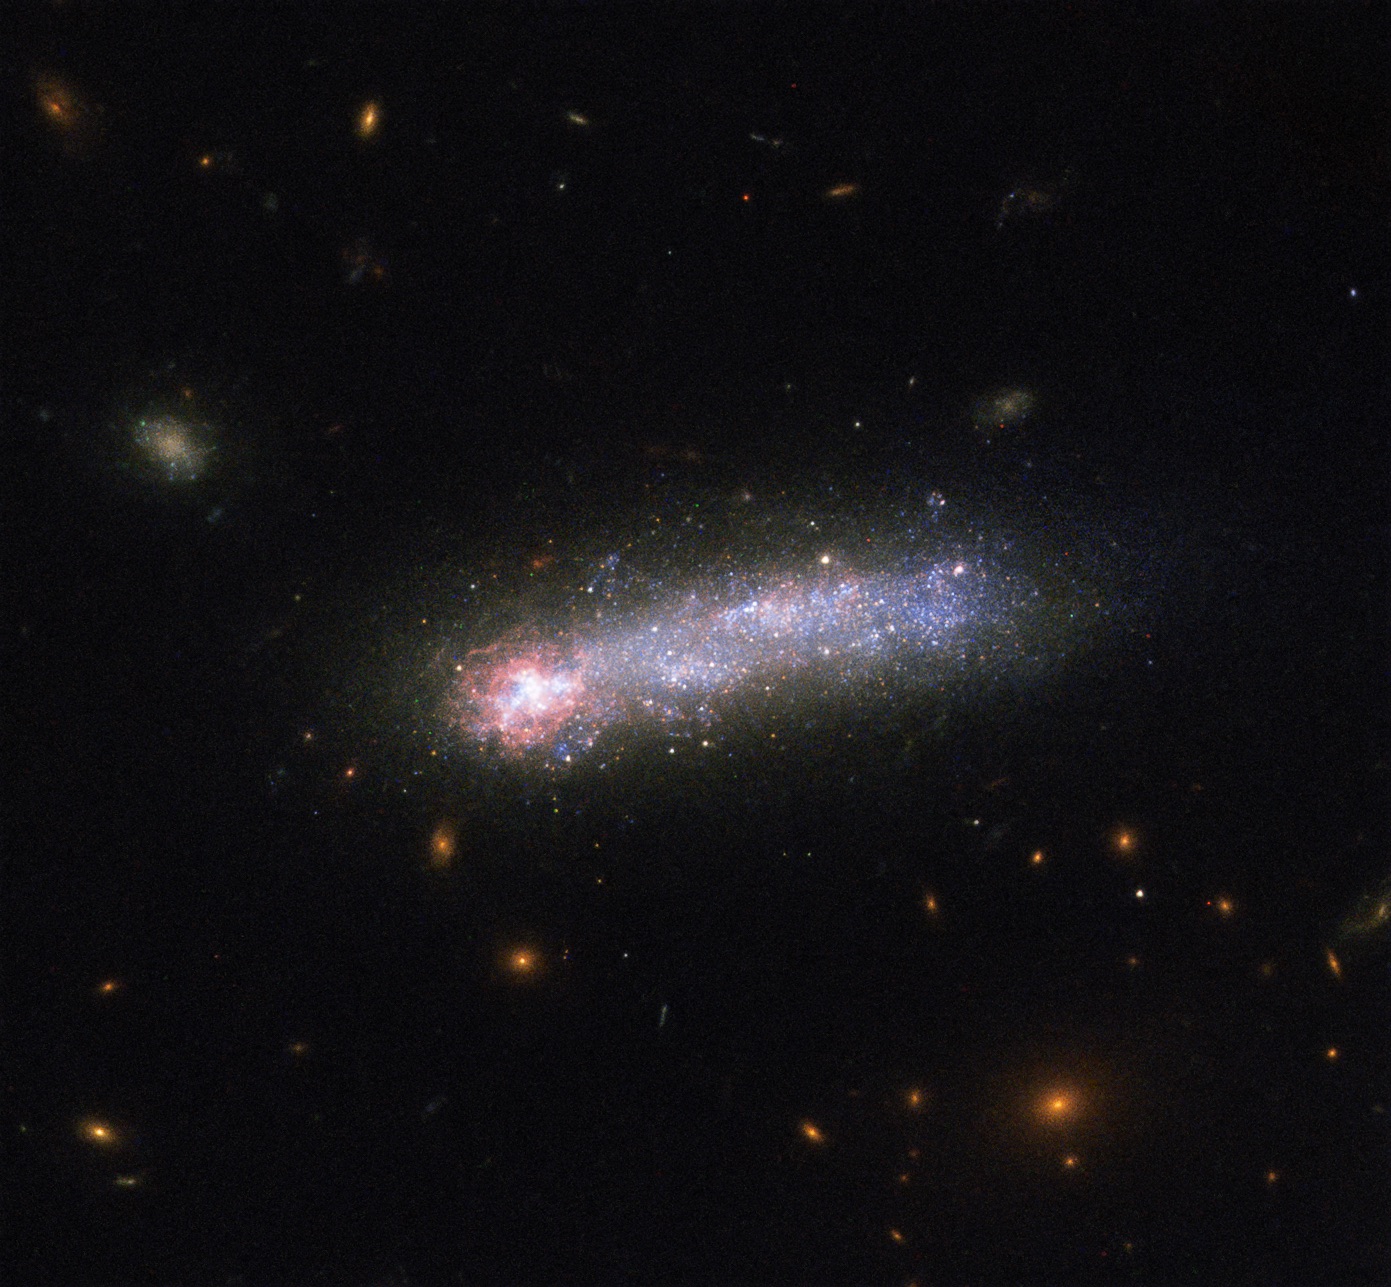 1月24日： 矮小銀河 Kiso 5639 - 天文・宇宙探査ニュース：画像を中心とした「新しい宇宙探査情報」のページです。